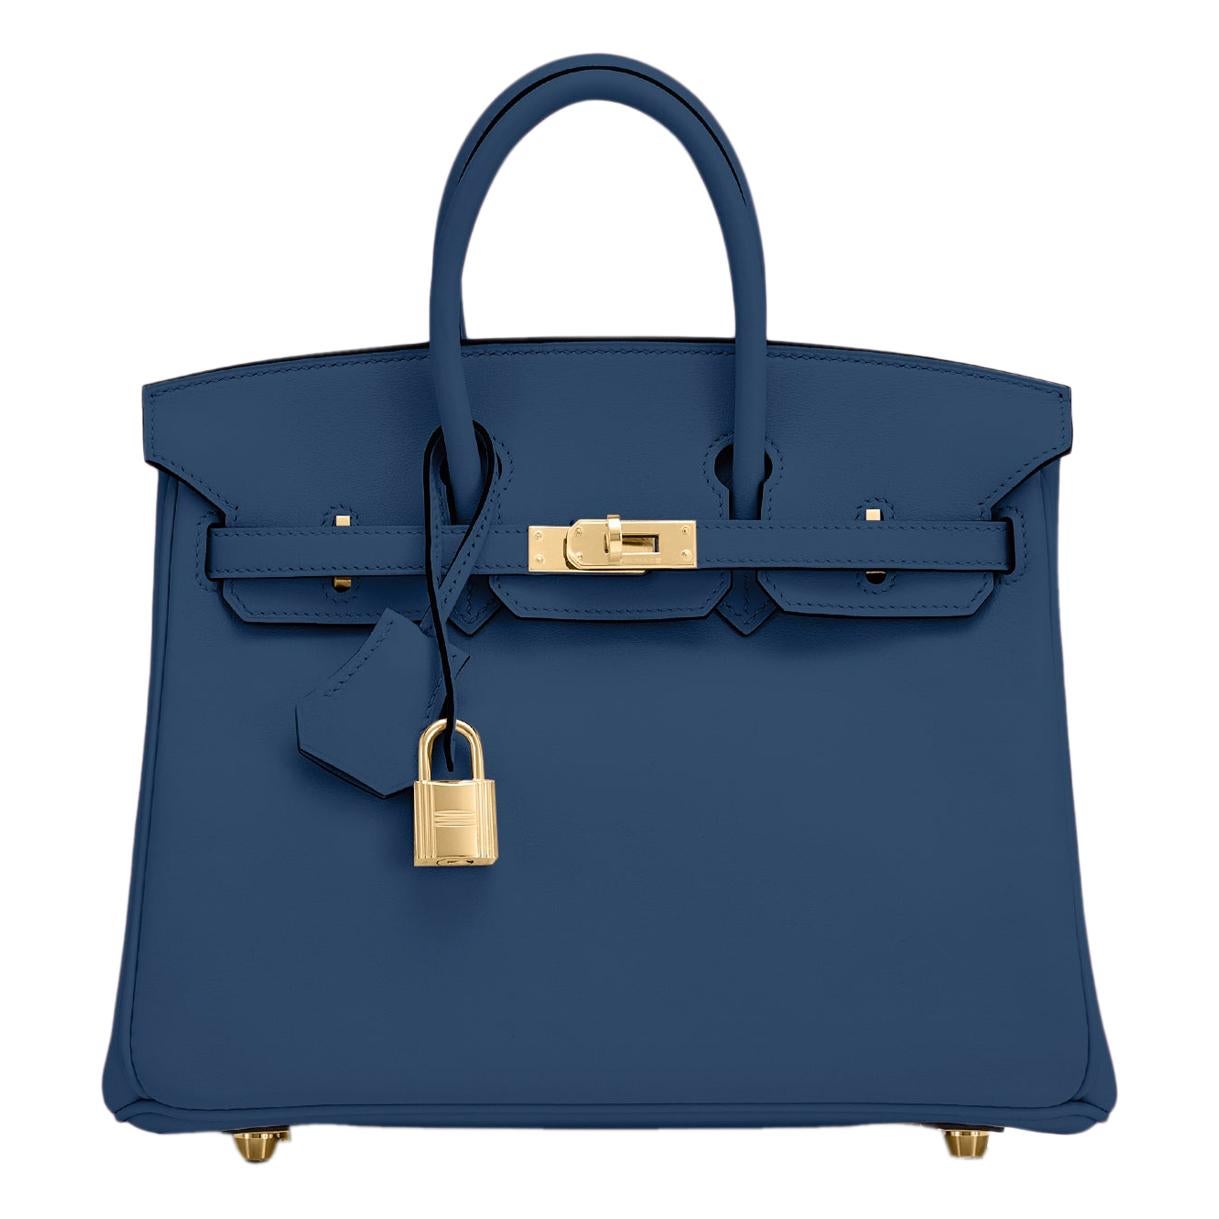 Hermes Birkin 25 Deep Blue Jewel Toned Navy Bag Gold Hardware Y Stamp, 2020